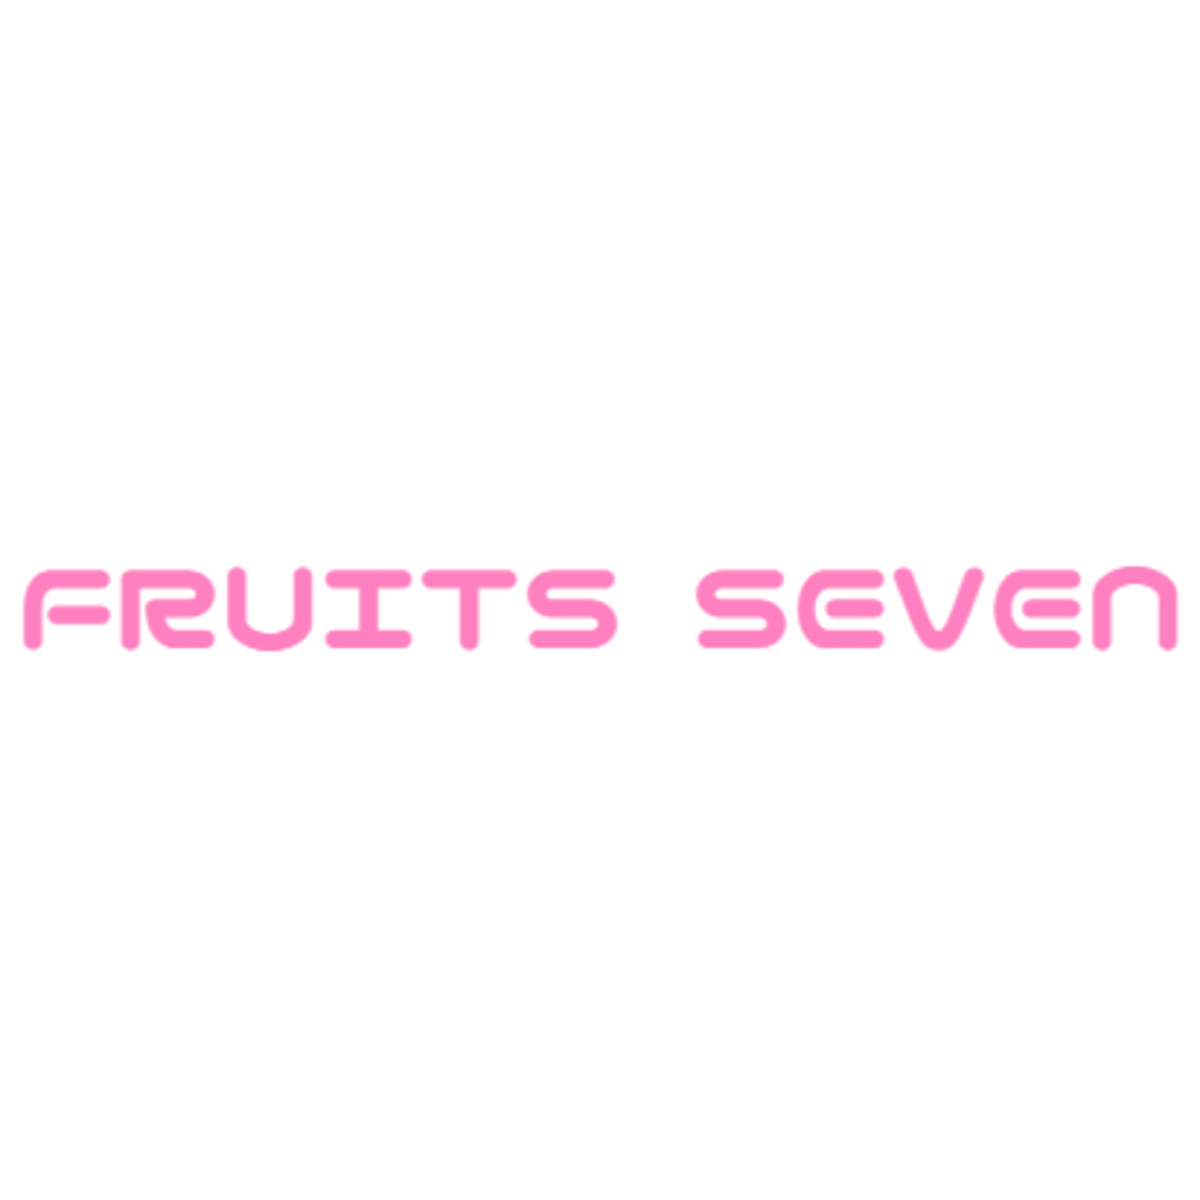 FRUITS SEVEN